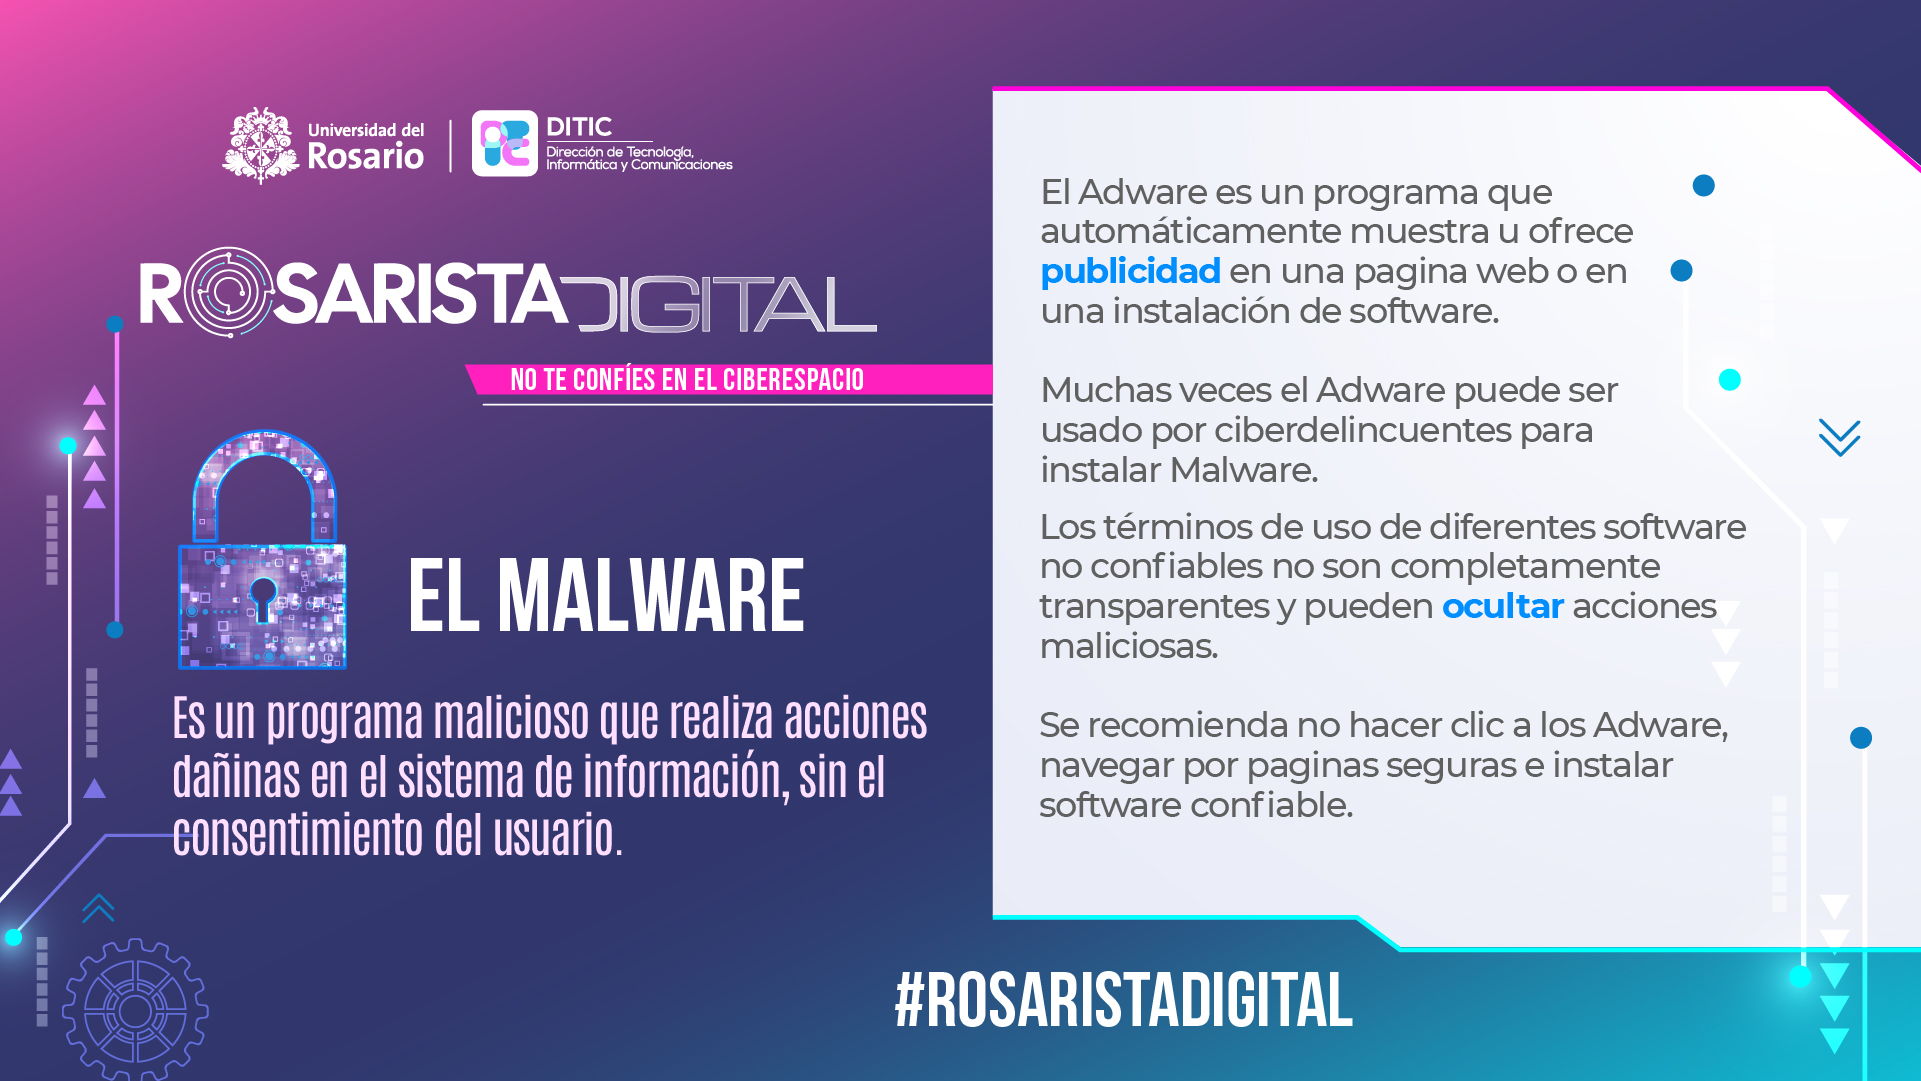 EL Malware - Rosarista Digital